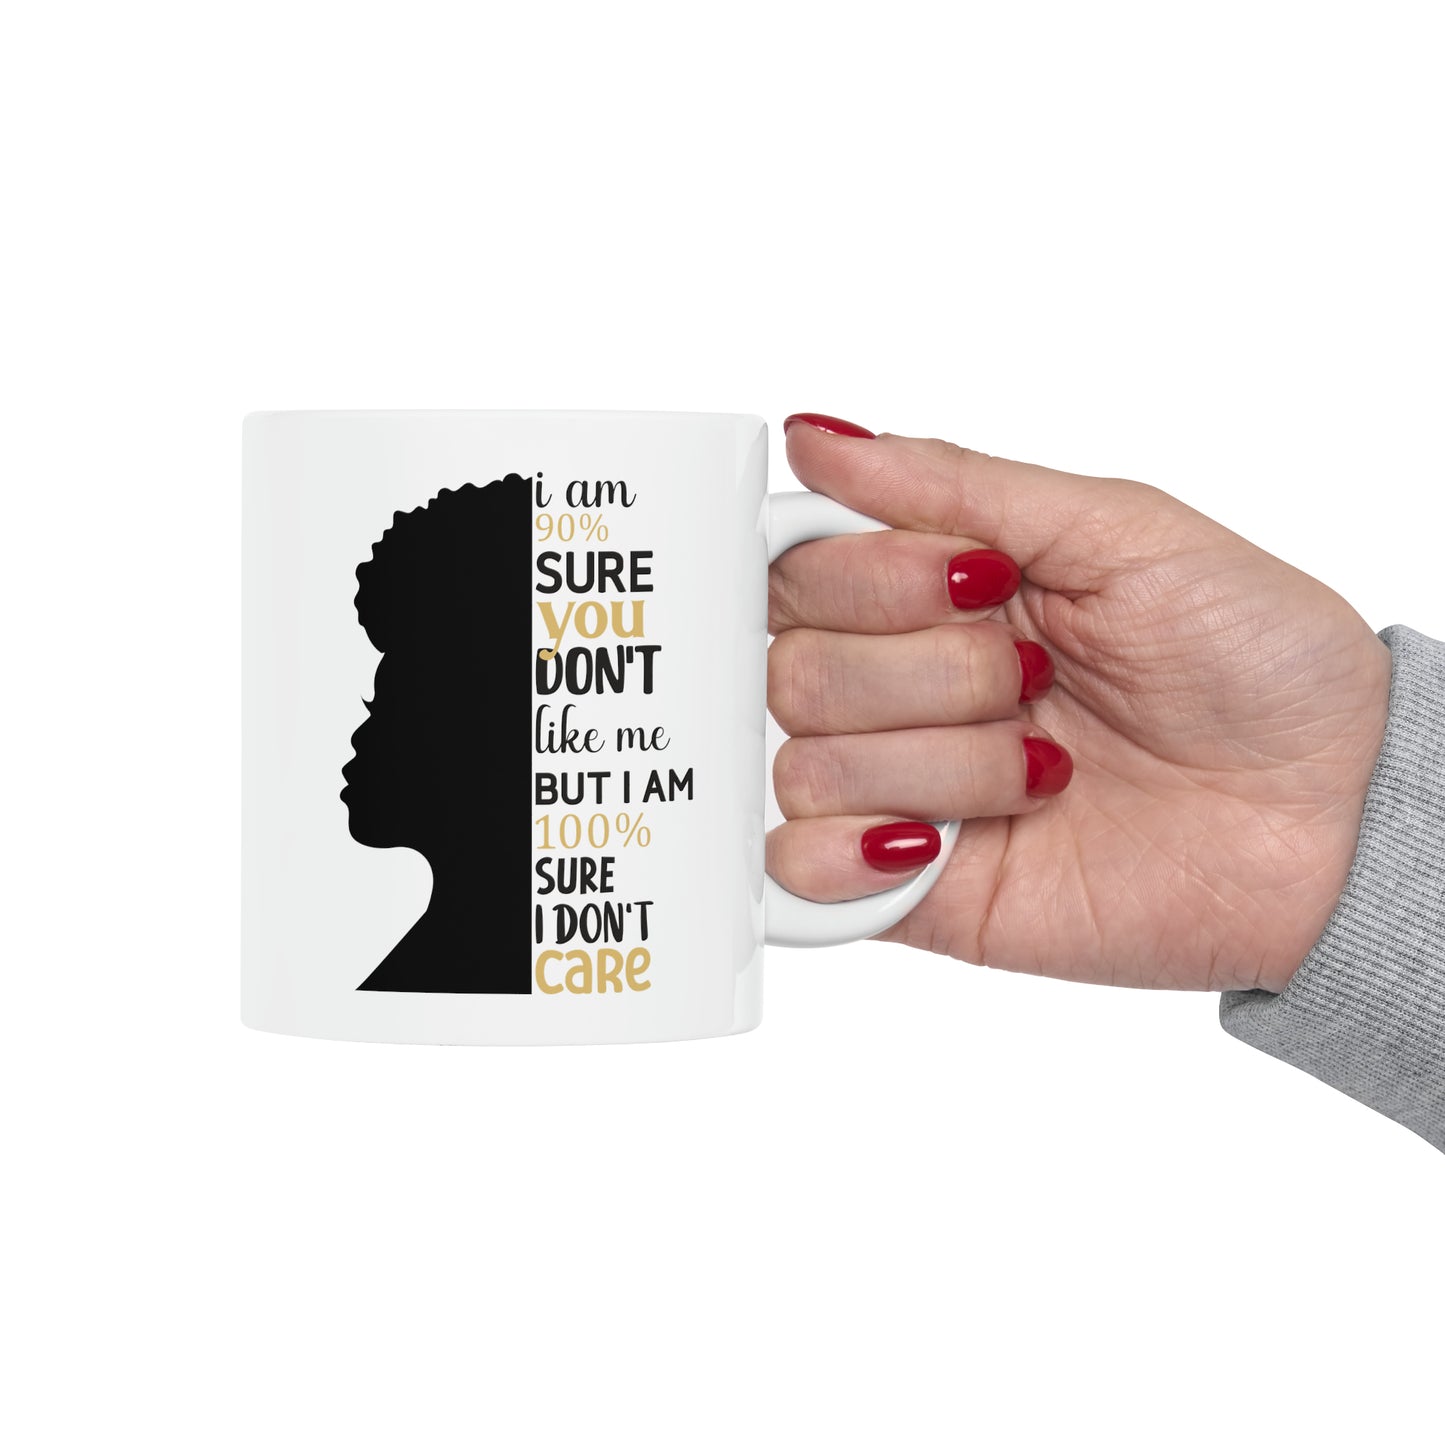 I Don't Care Ceramic Mug, 11oz | Gift For Her